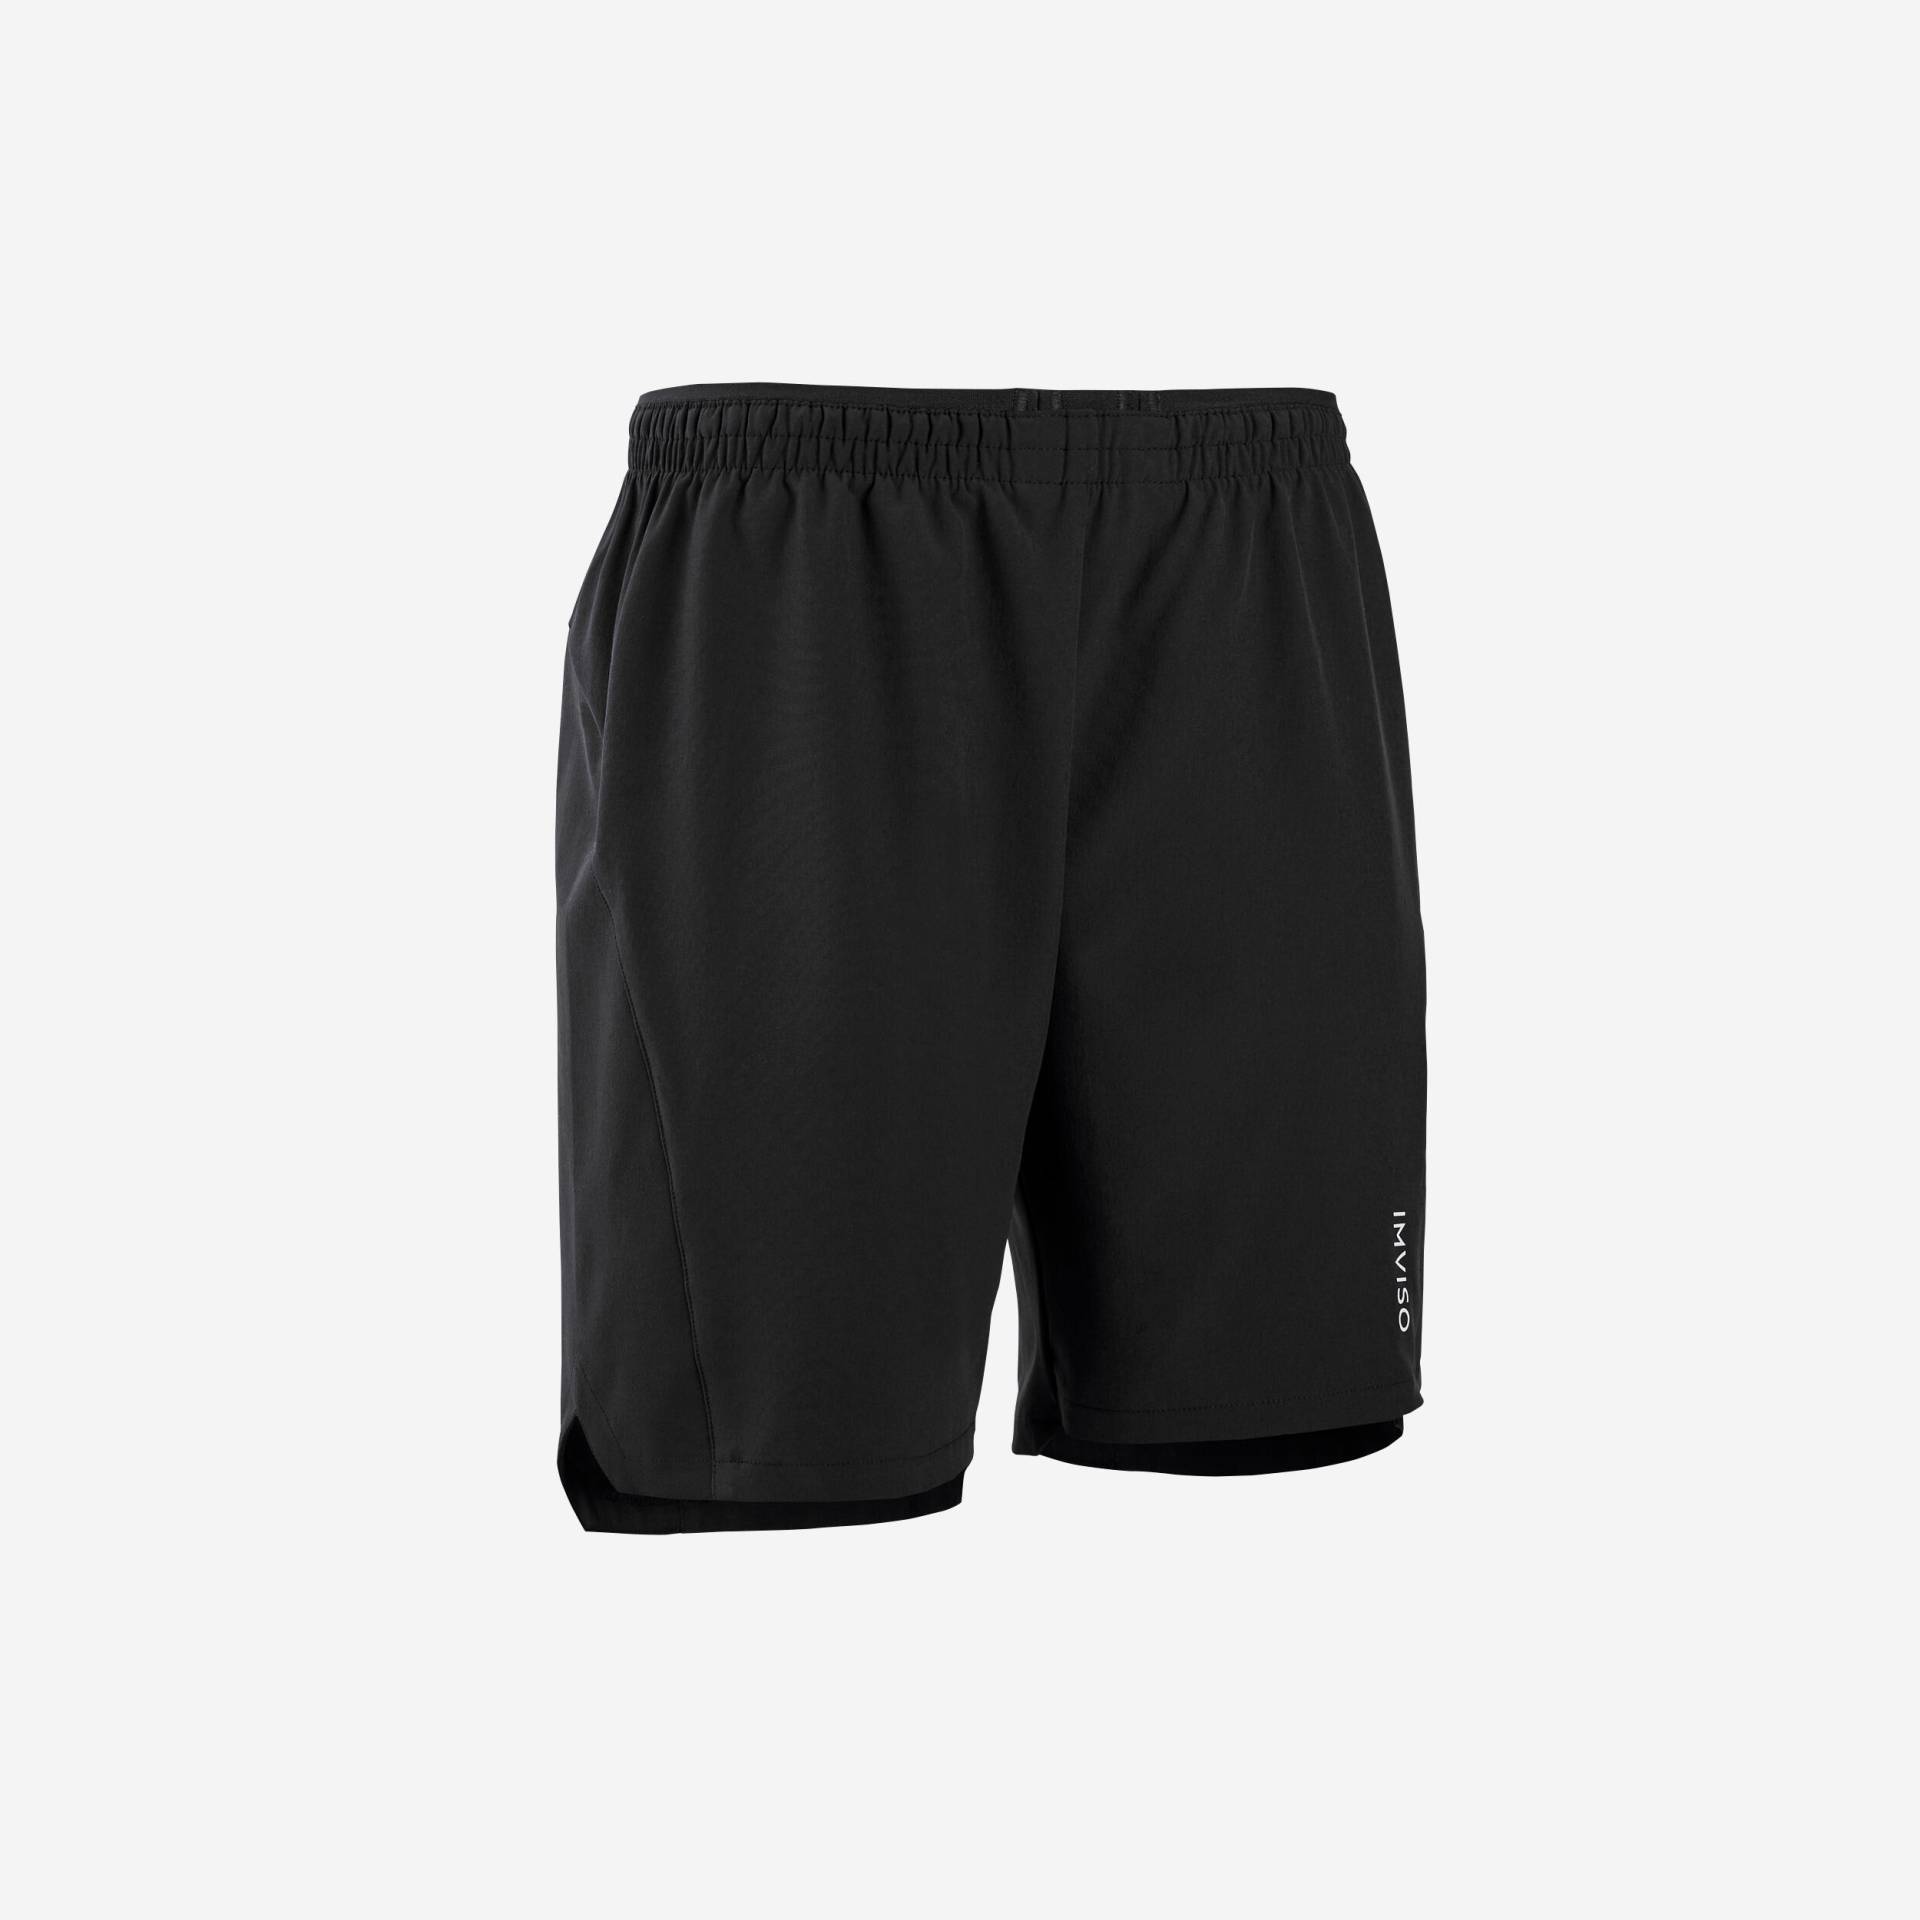 Herren Fussball/Futsal Shorts schwarz von KIPSTA